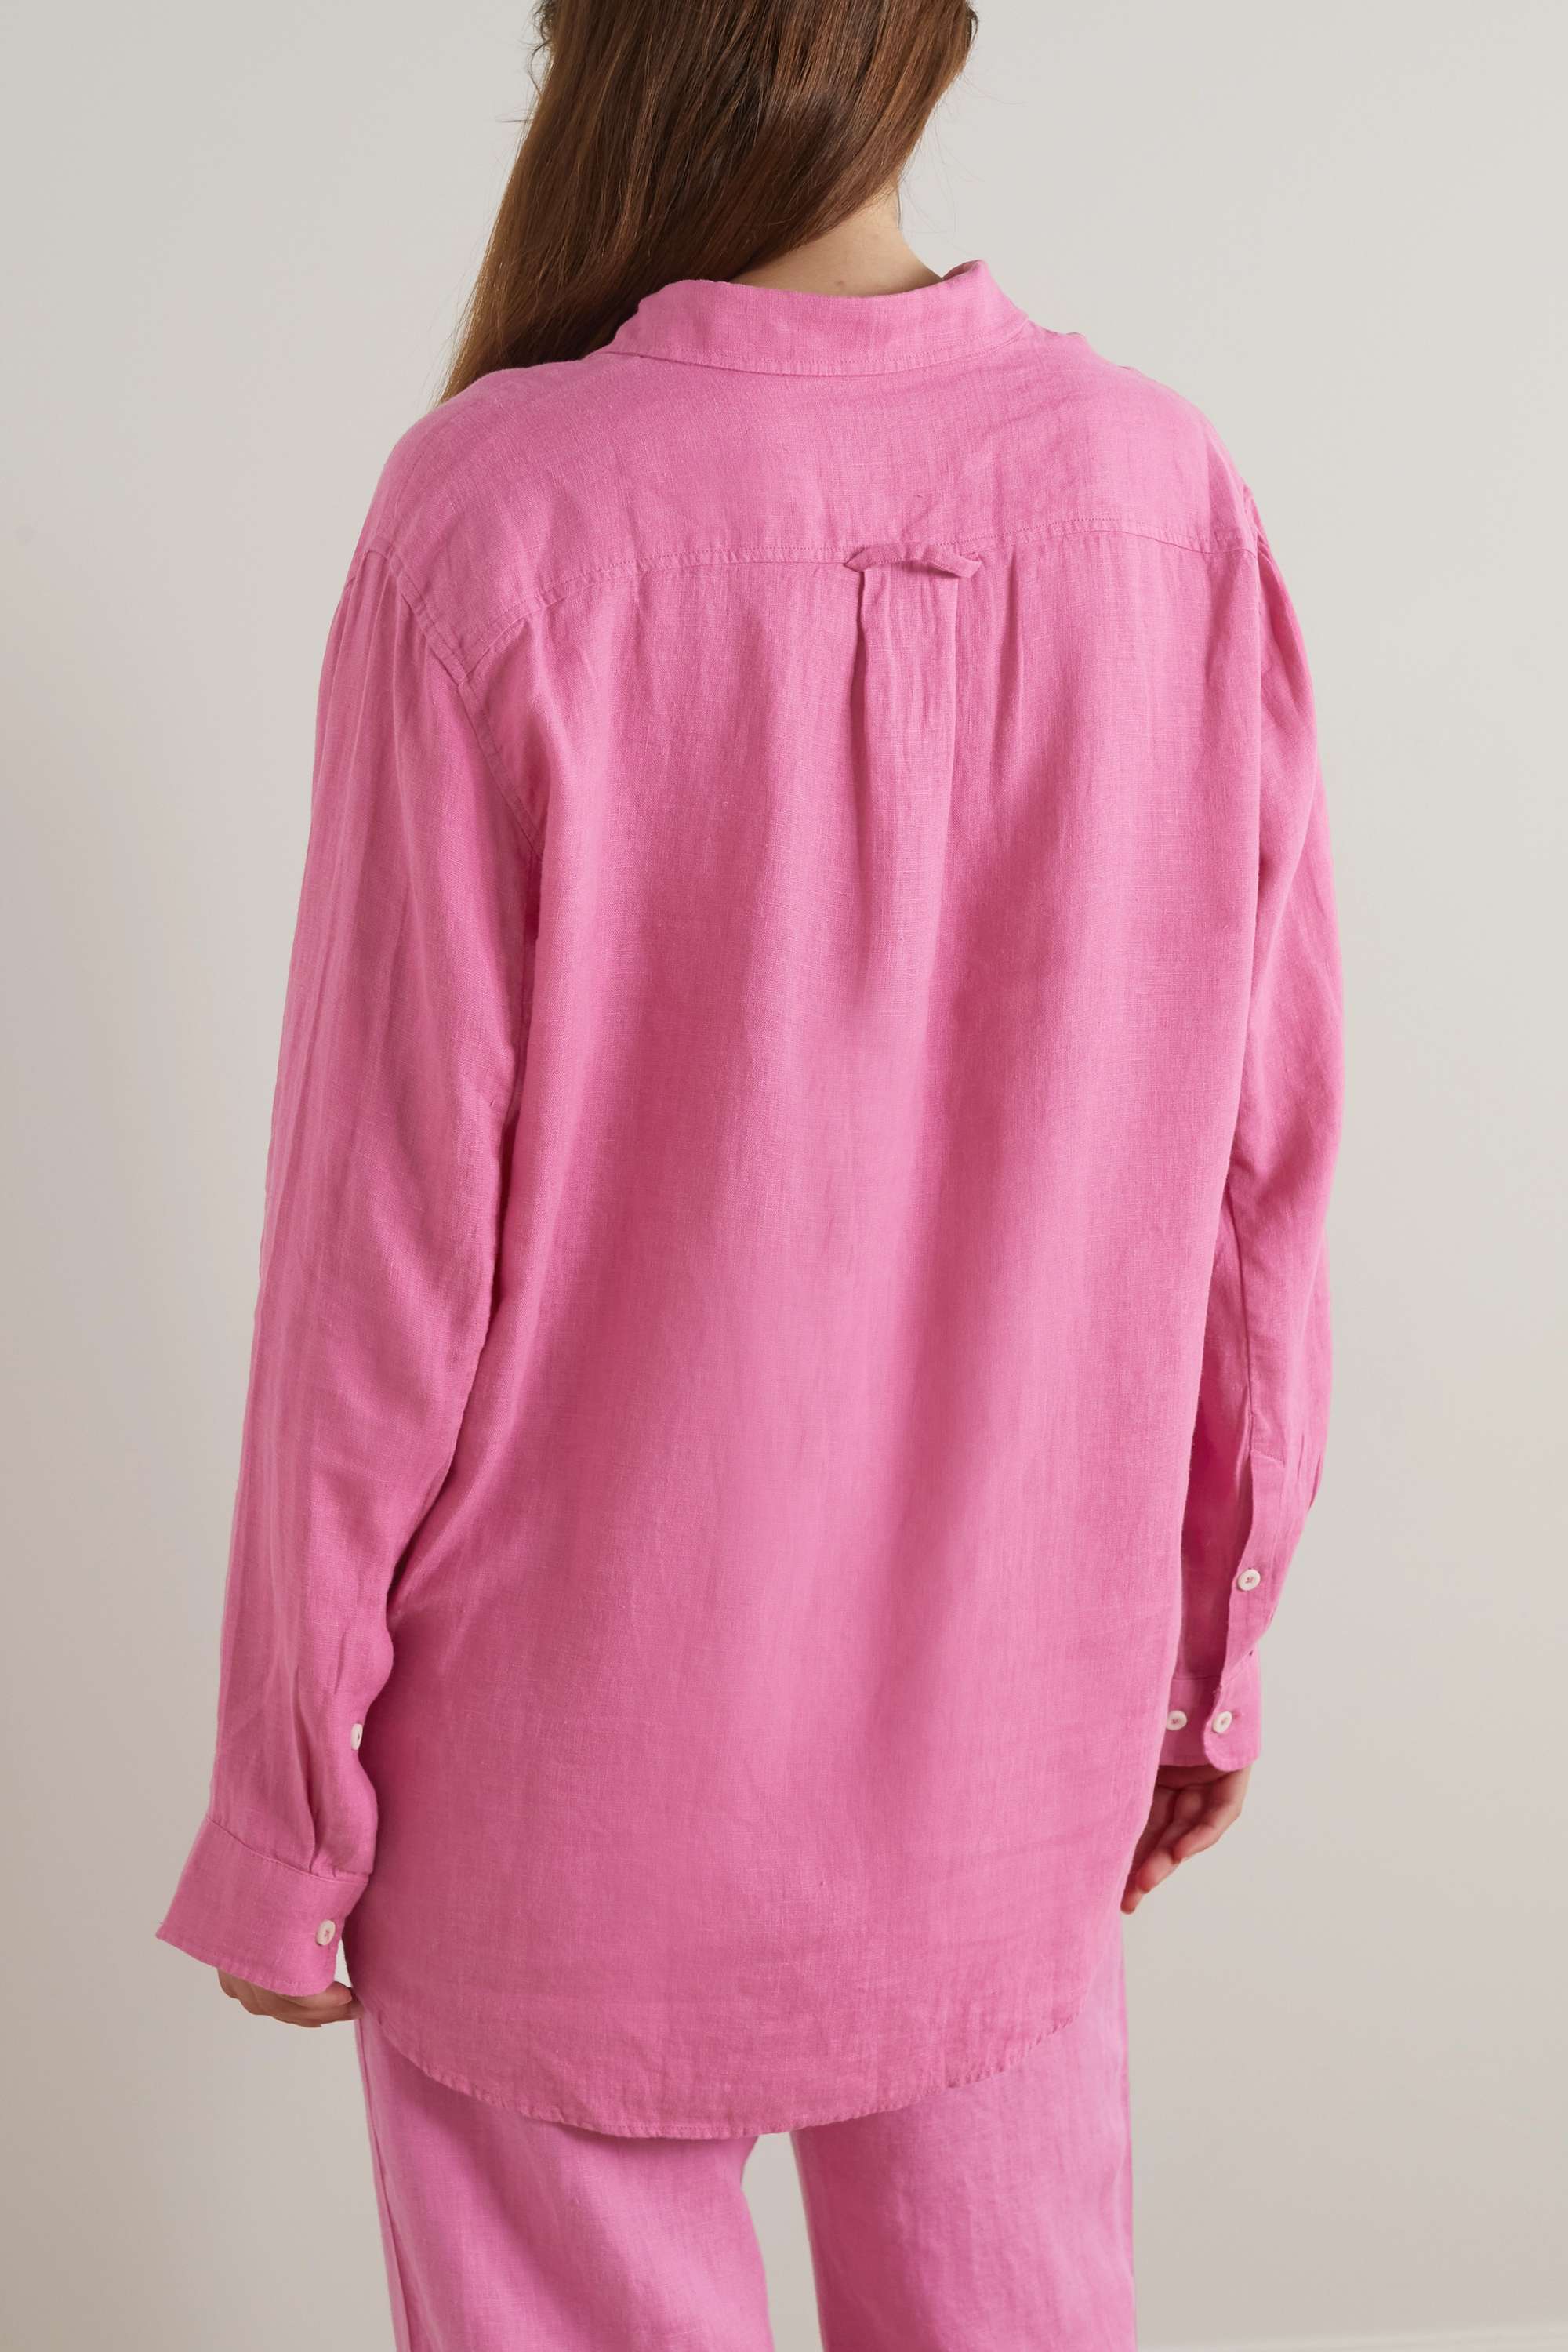 DESMOND & DEMPSEY + льняная рубашка NET SUSTAIN, розовый